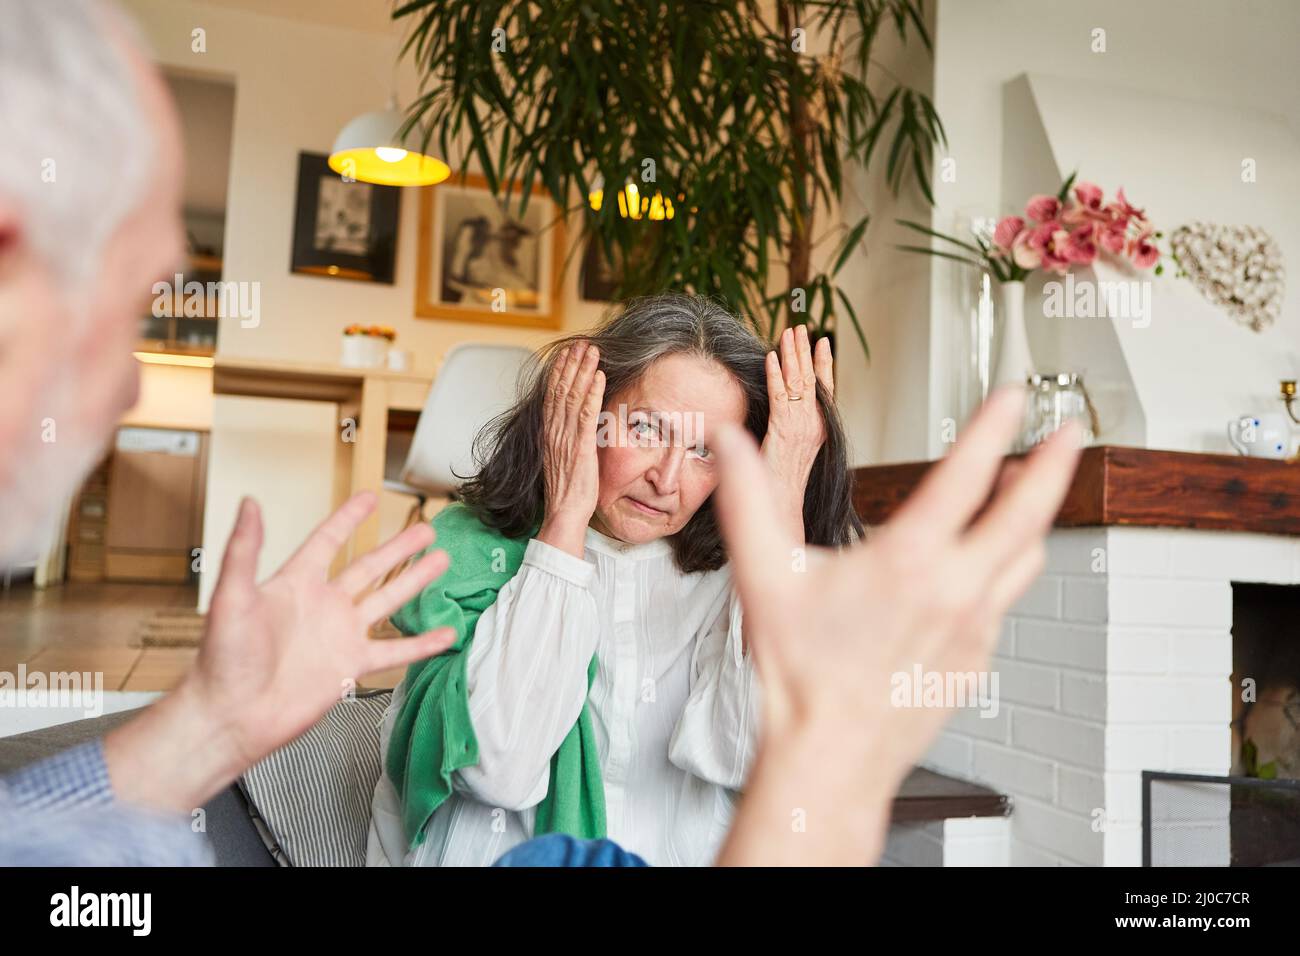 Ältere Frau, die Ohren bedeckt, während sie mit einem wütenden Mann als Konzept der häuslichen Gewalt argumentiert Stockfoto